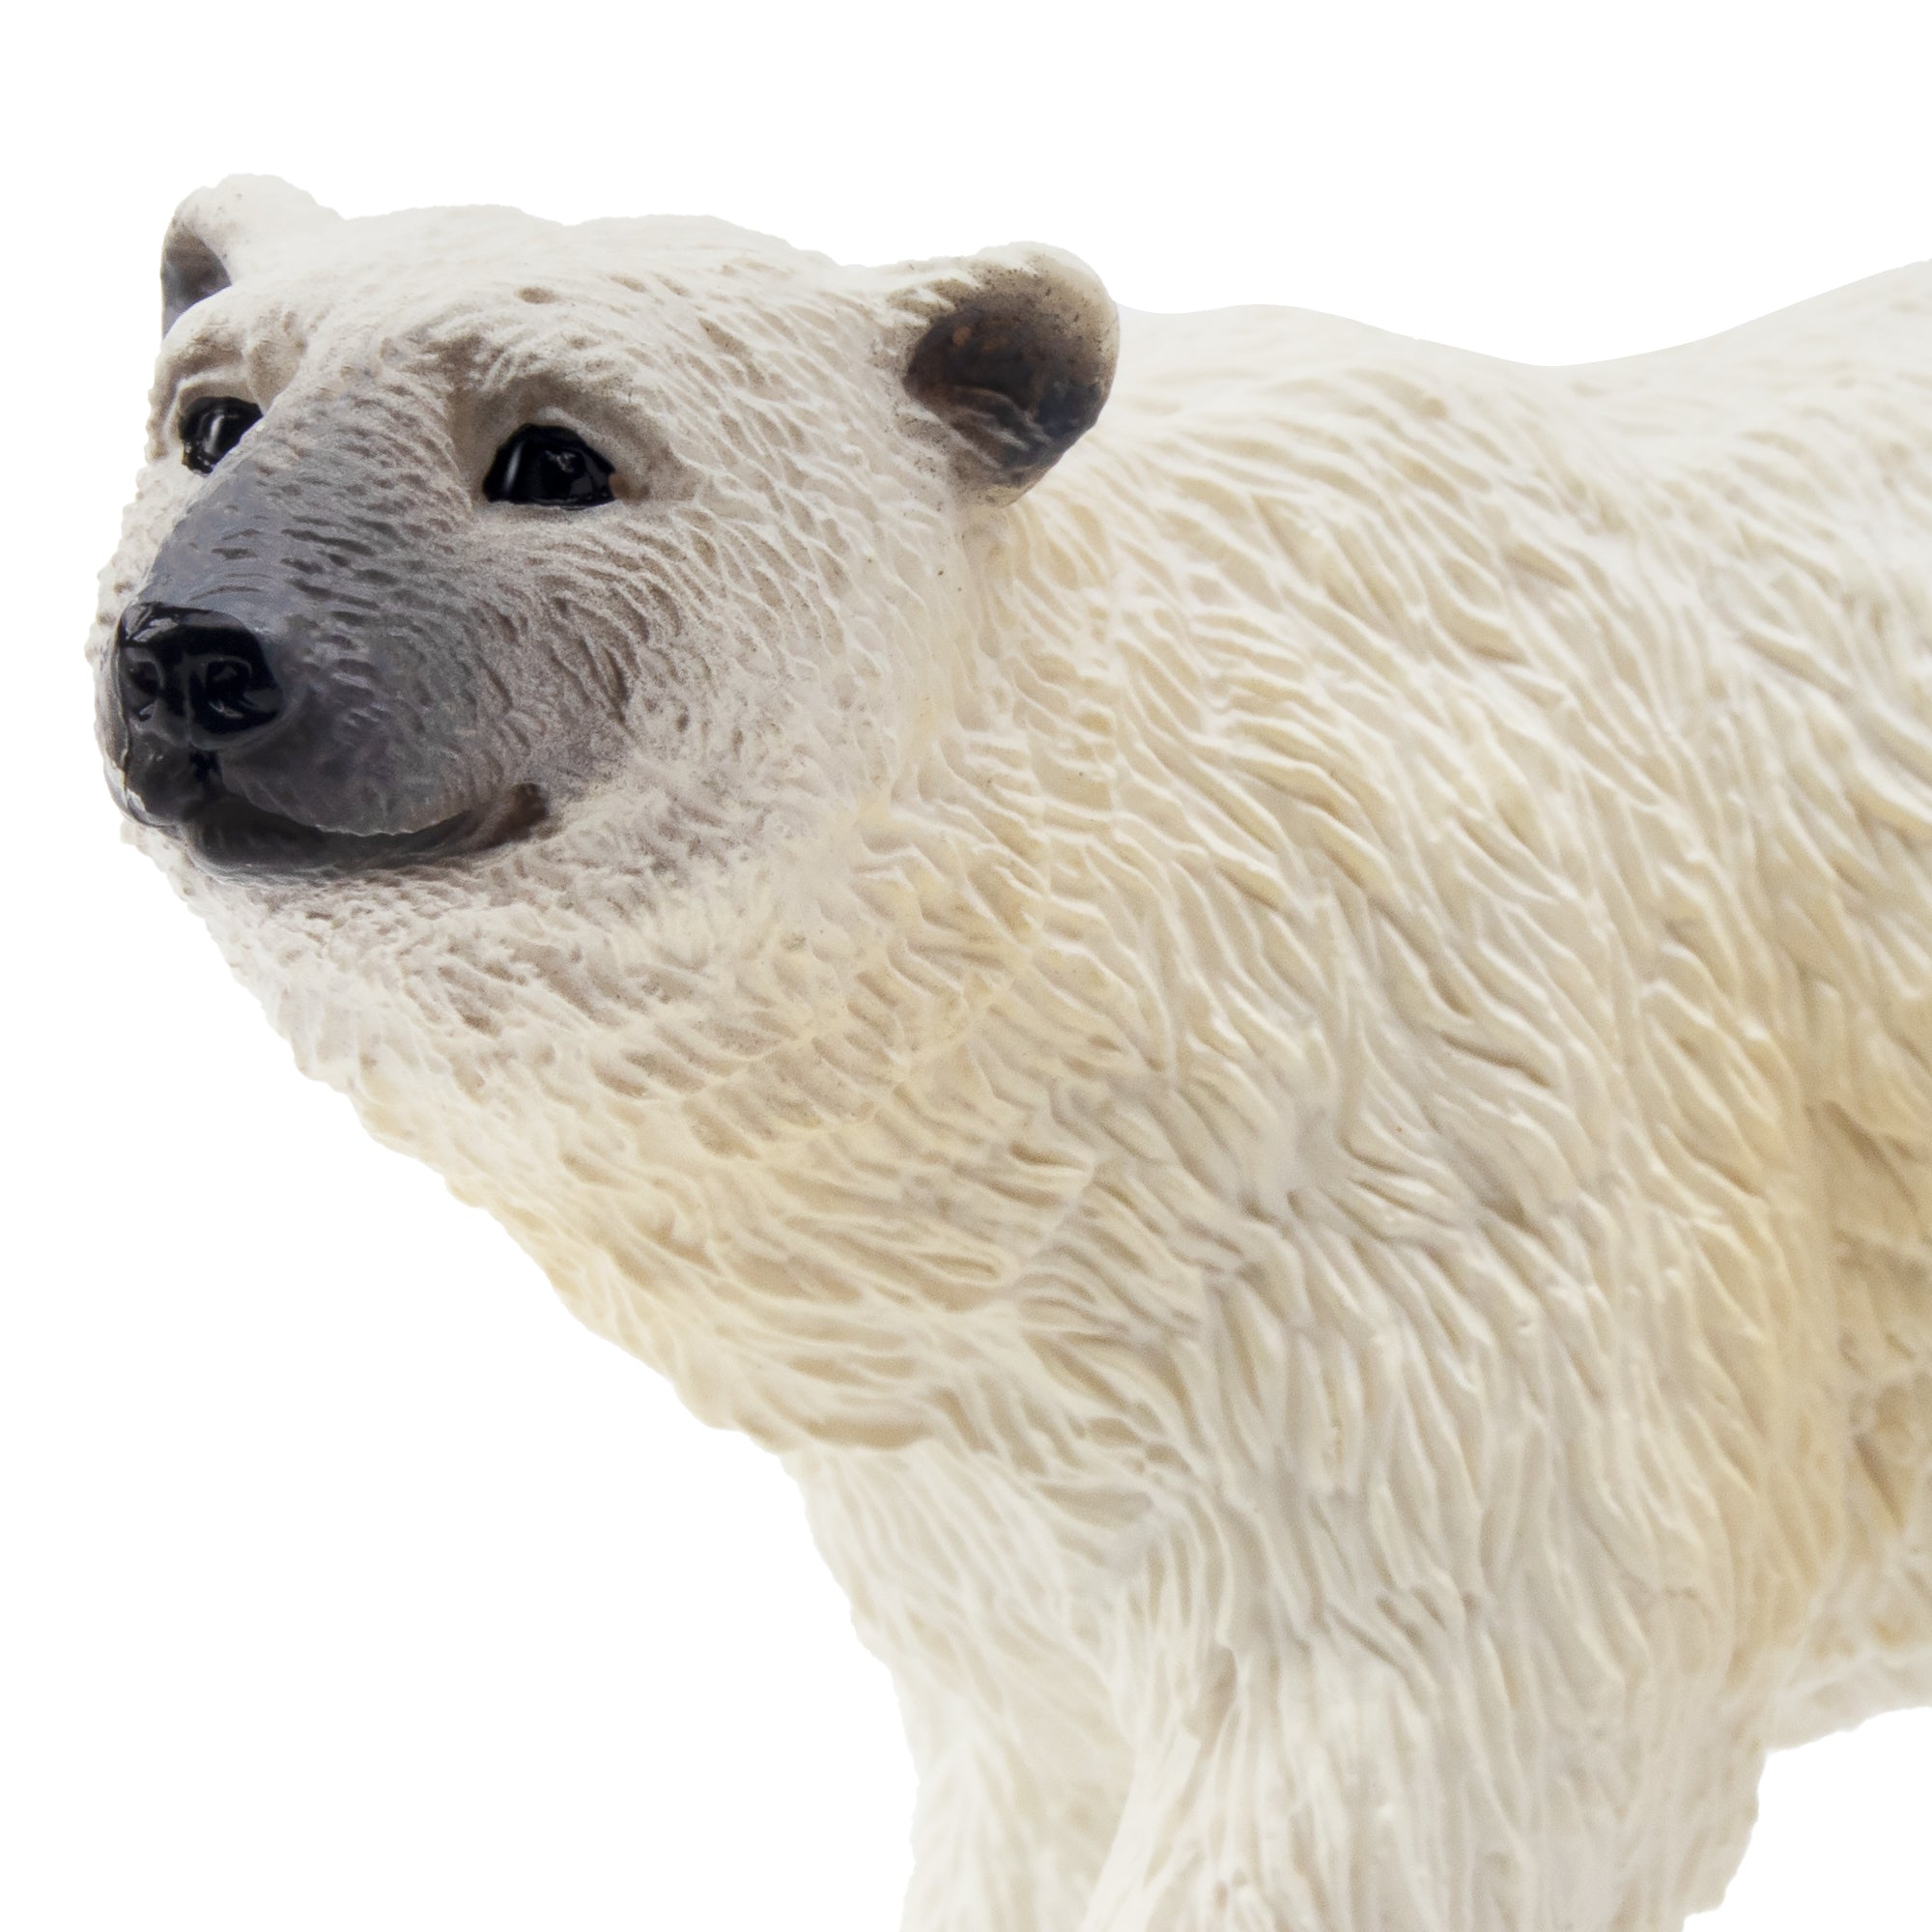 Toymany Male Polar Bear Figurine Toy-detail 1